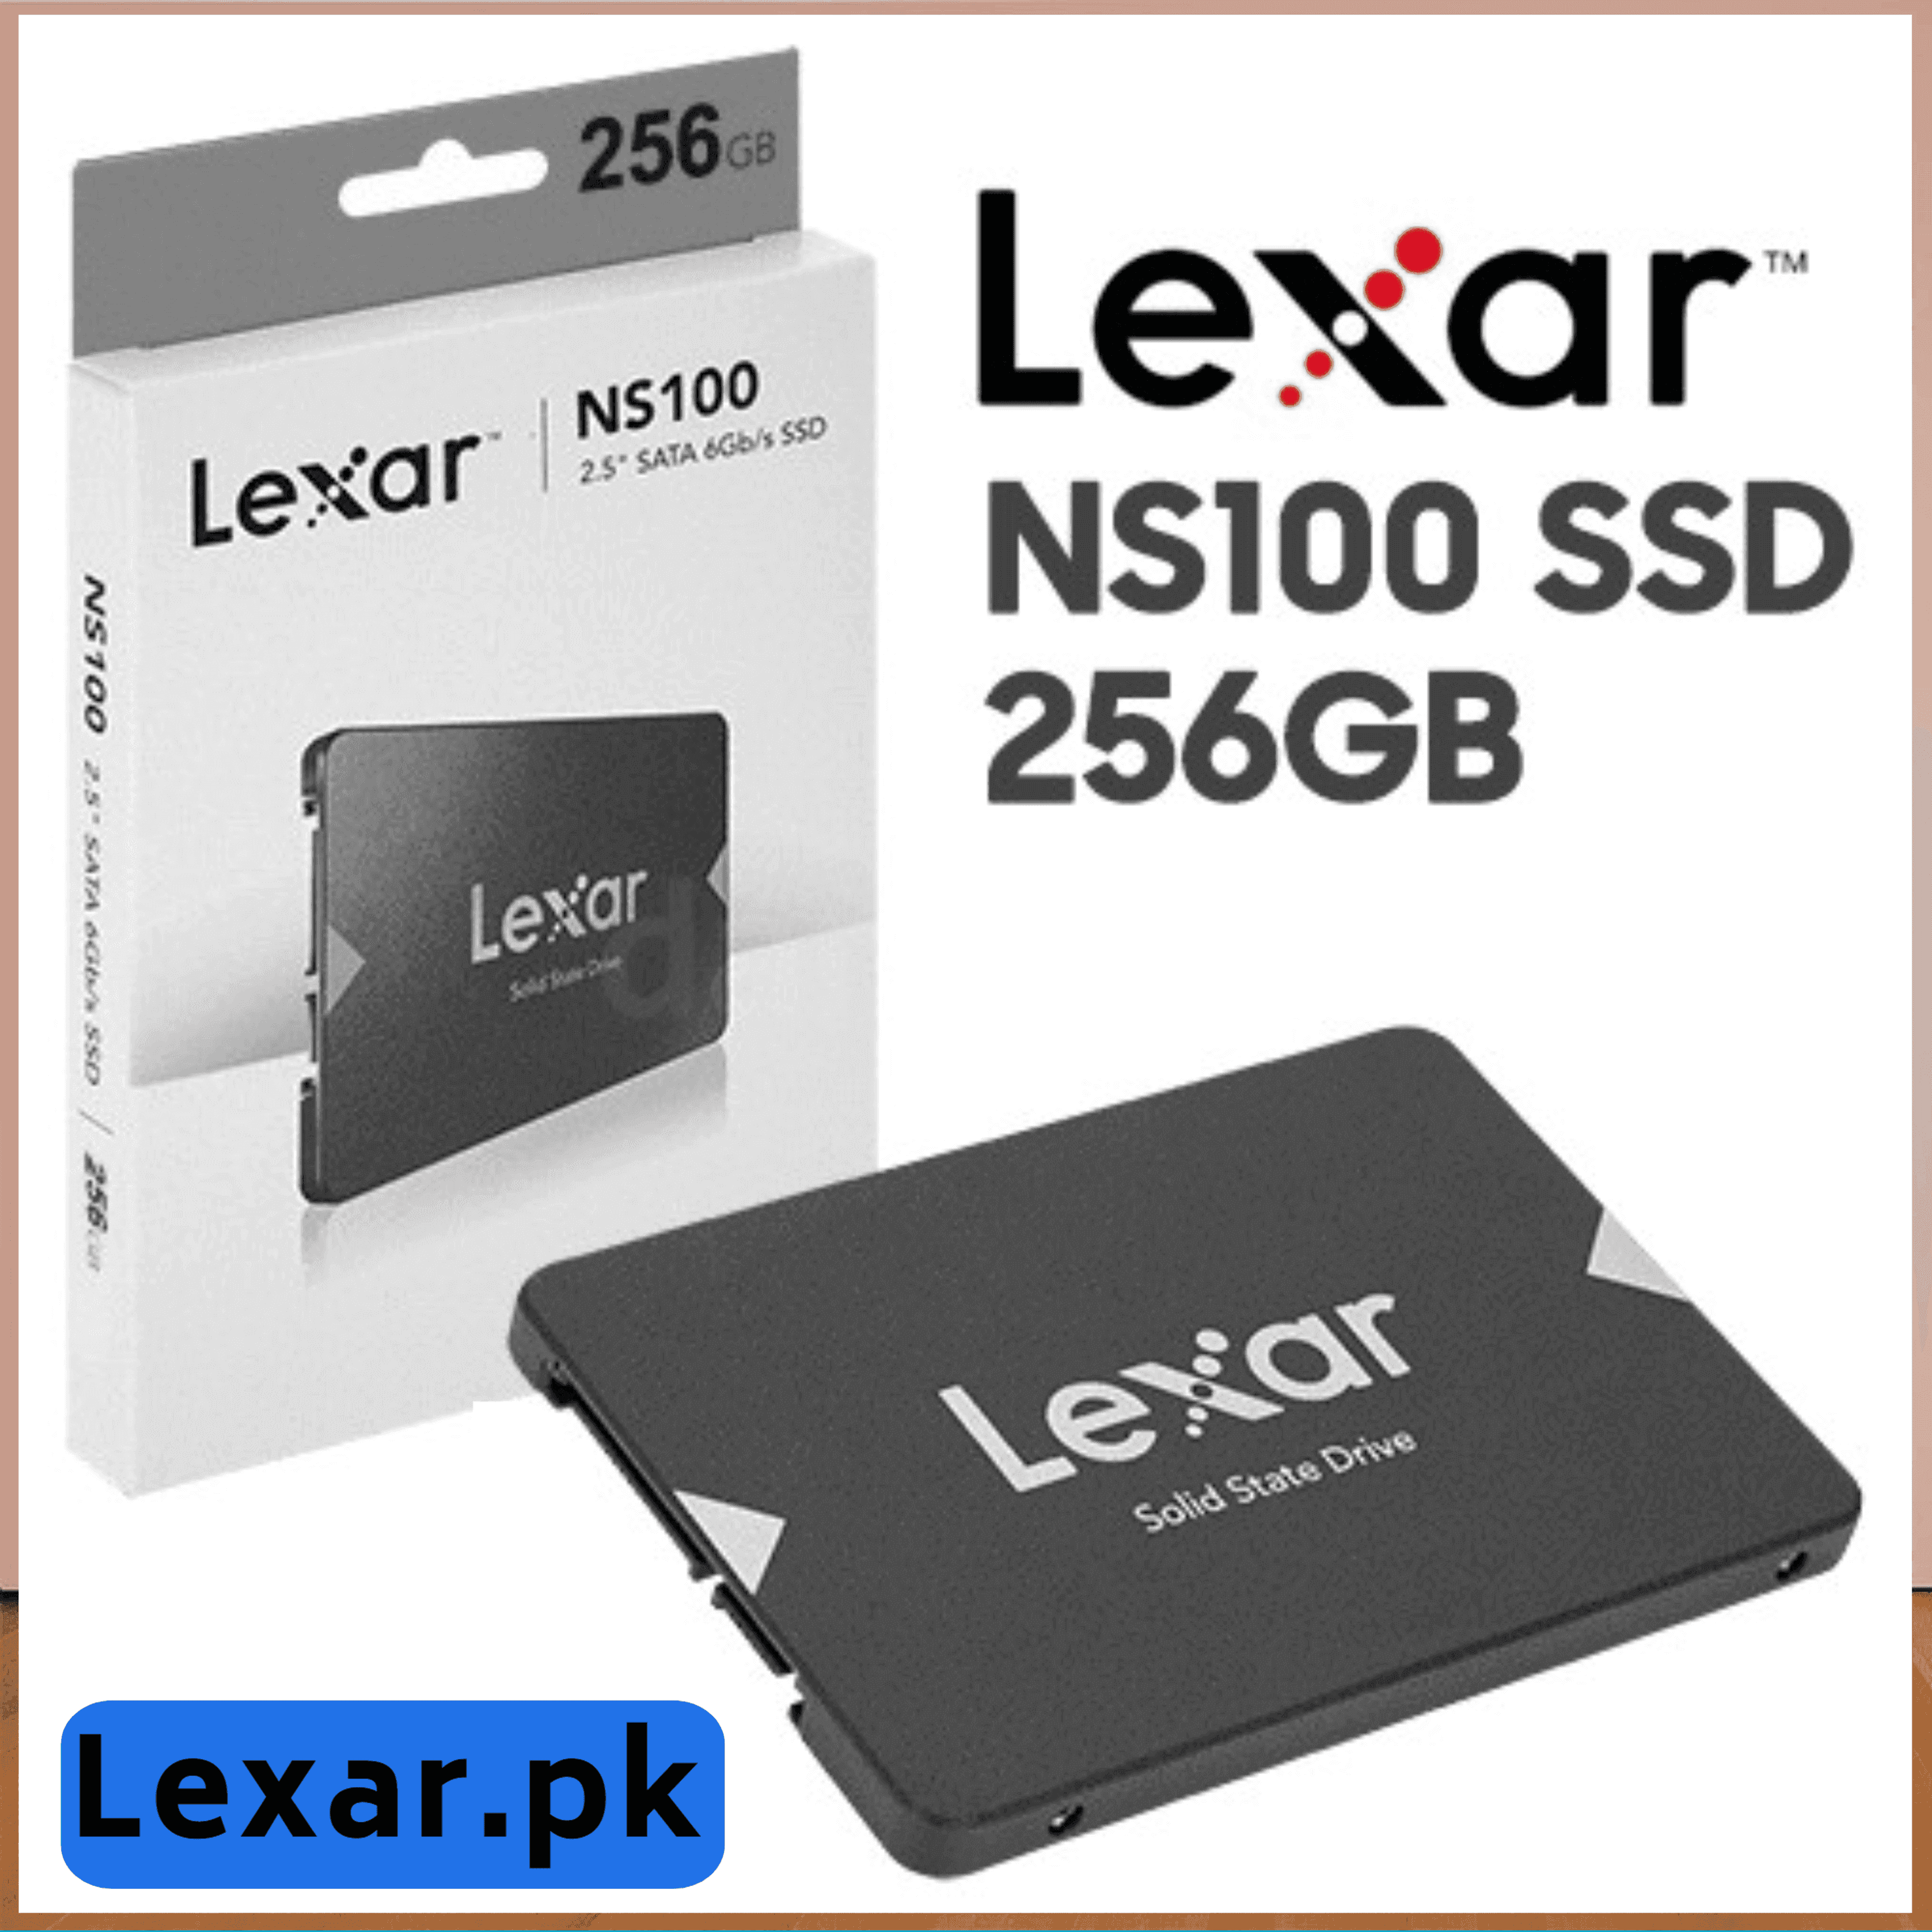 256GB Lexar SSD NS100 2.5 Sata III 6Gb/s Solid State Drive